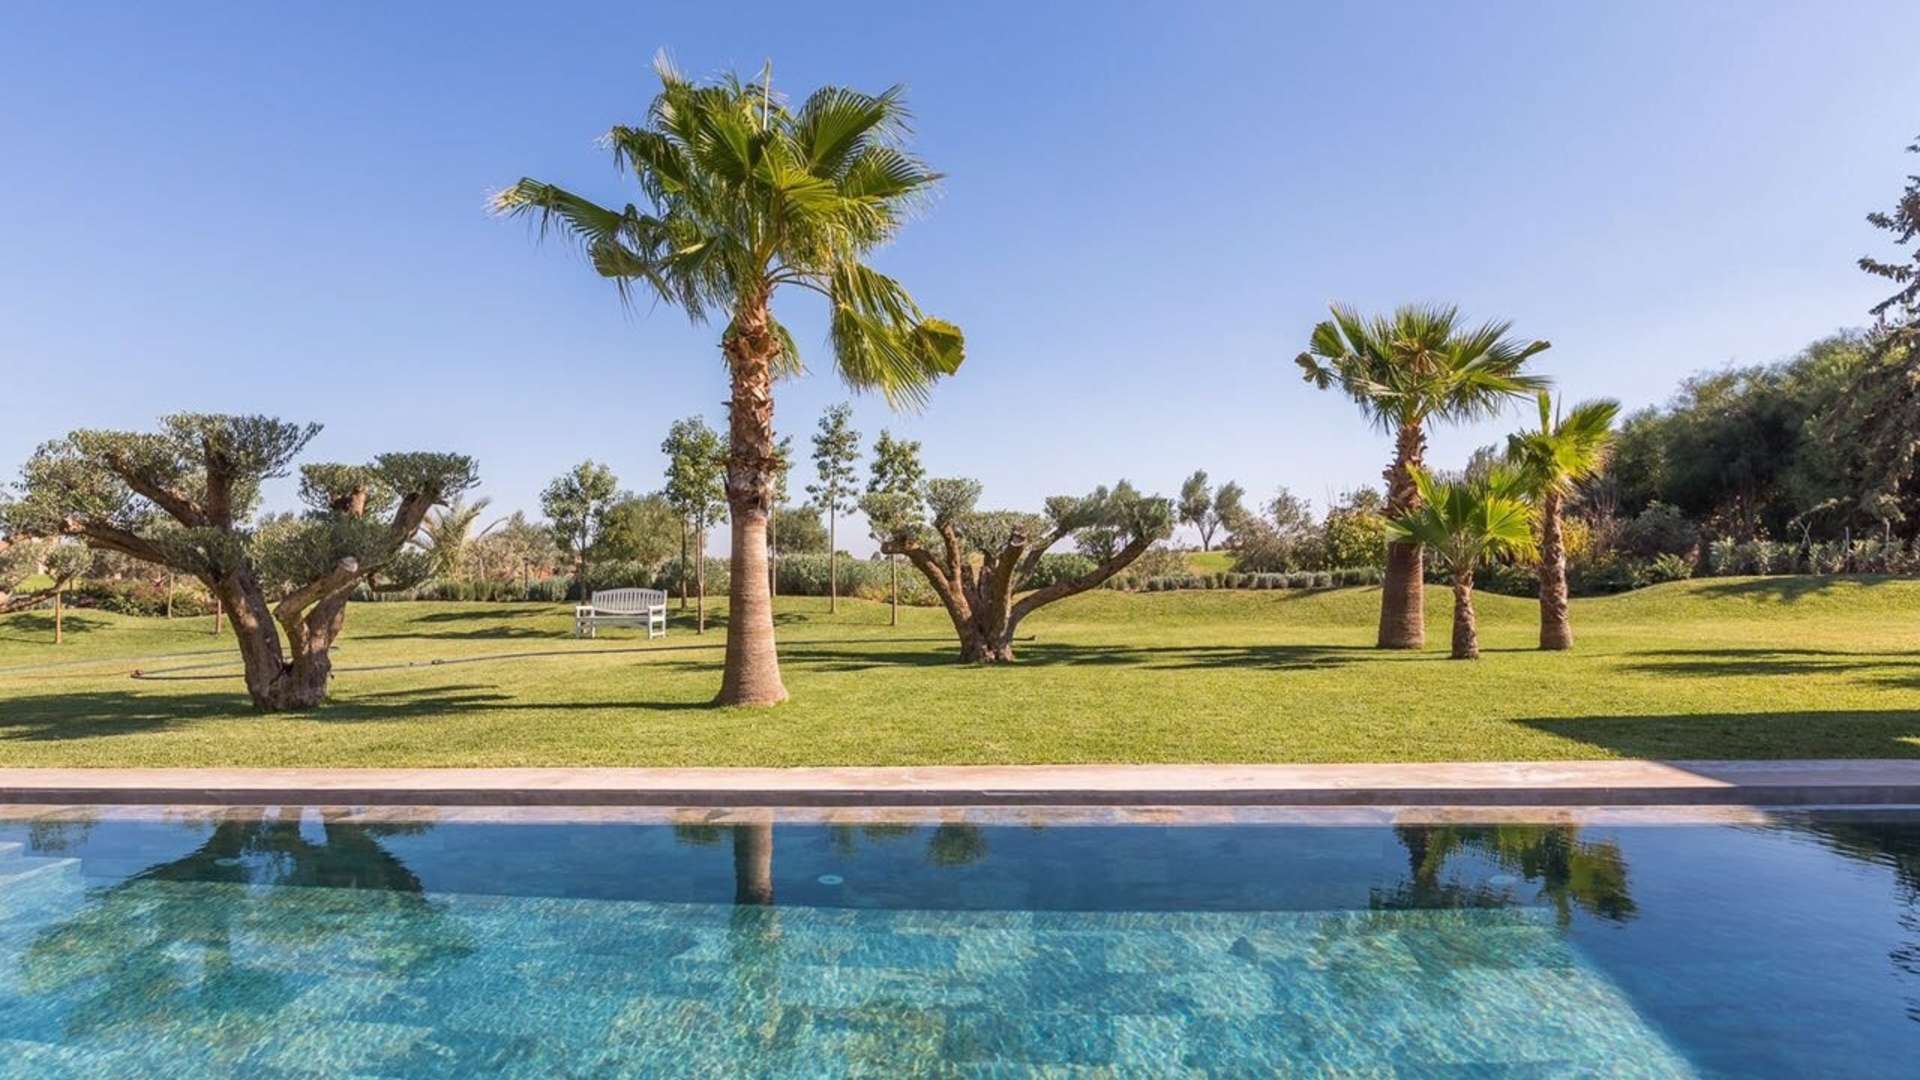 Vente,Villa,Superbe villa 5ch toute neuve de style contemporain en première ligne sur le golf d'Amelkis,Marrakech,Amelkis Golf Resort